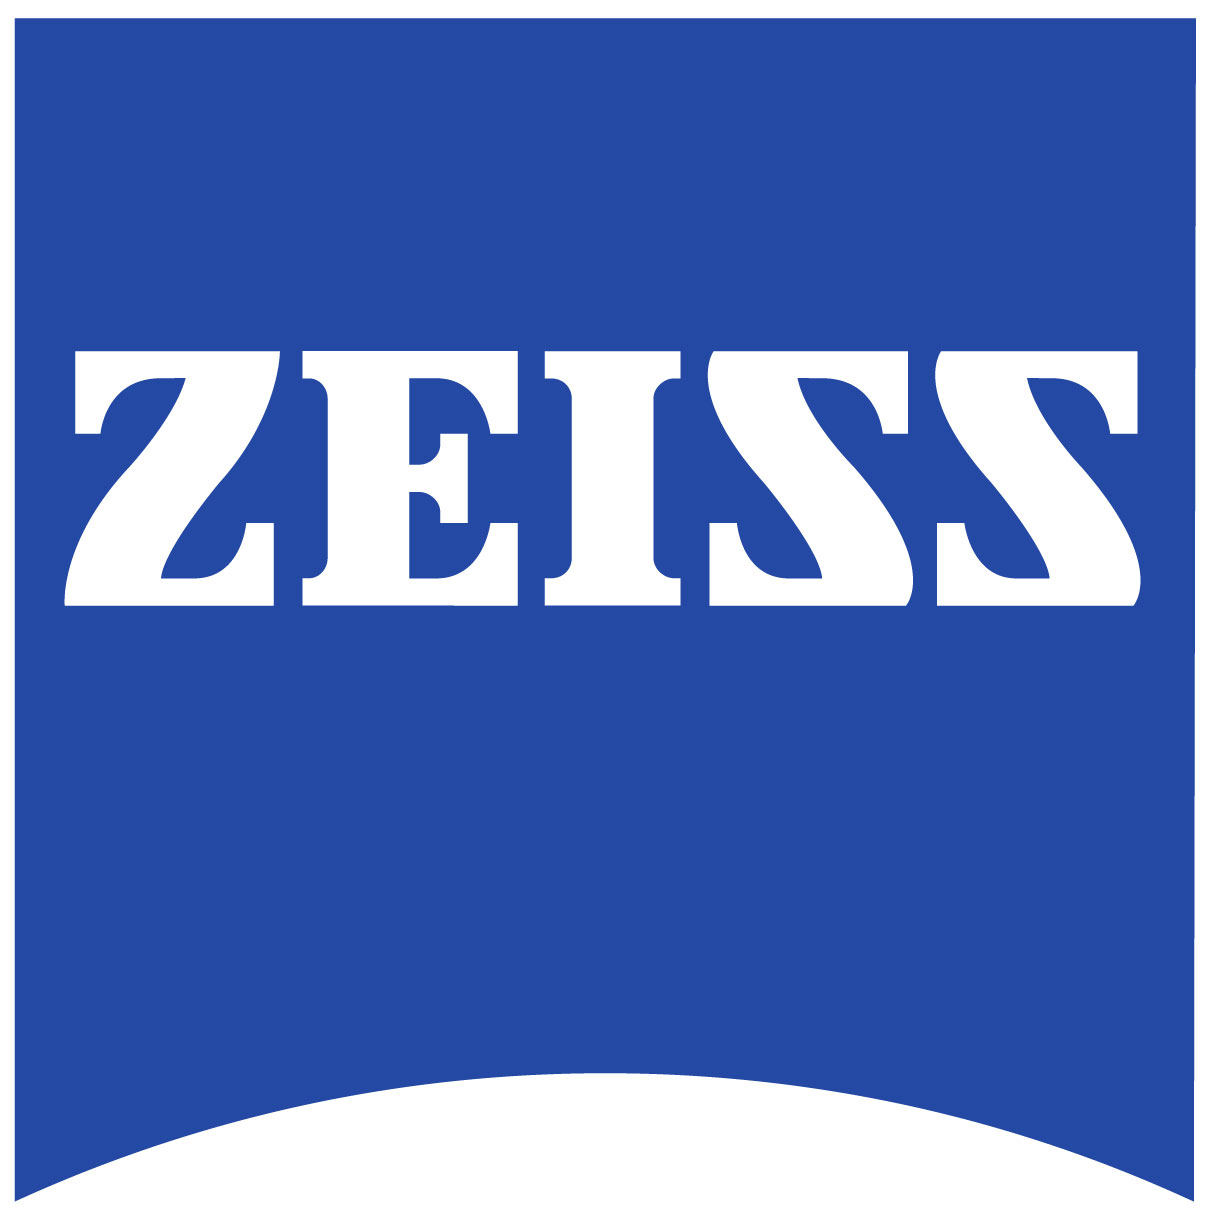 Zeiss logo 01